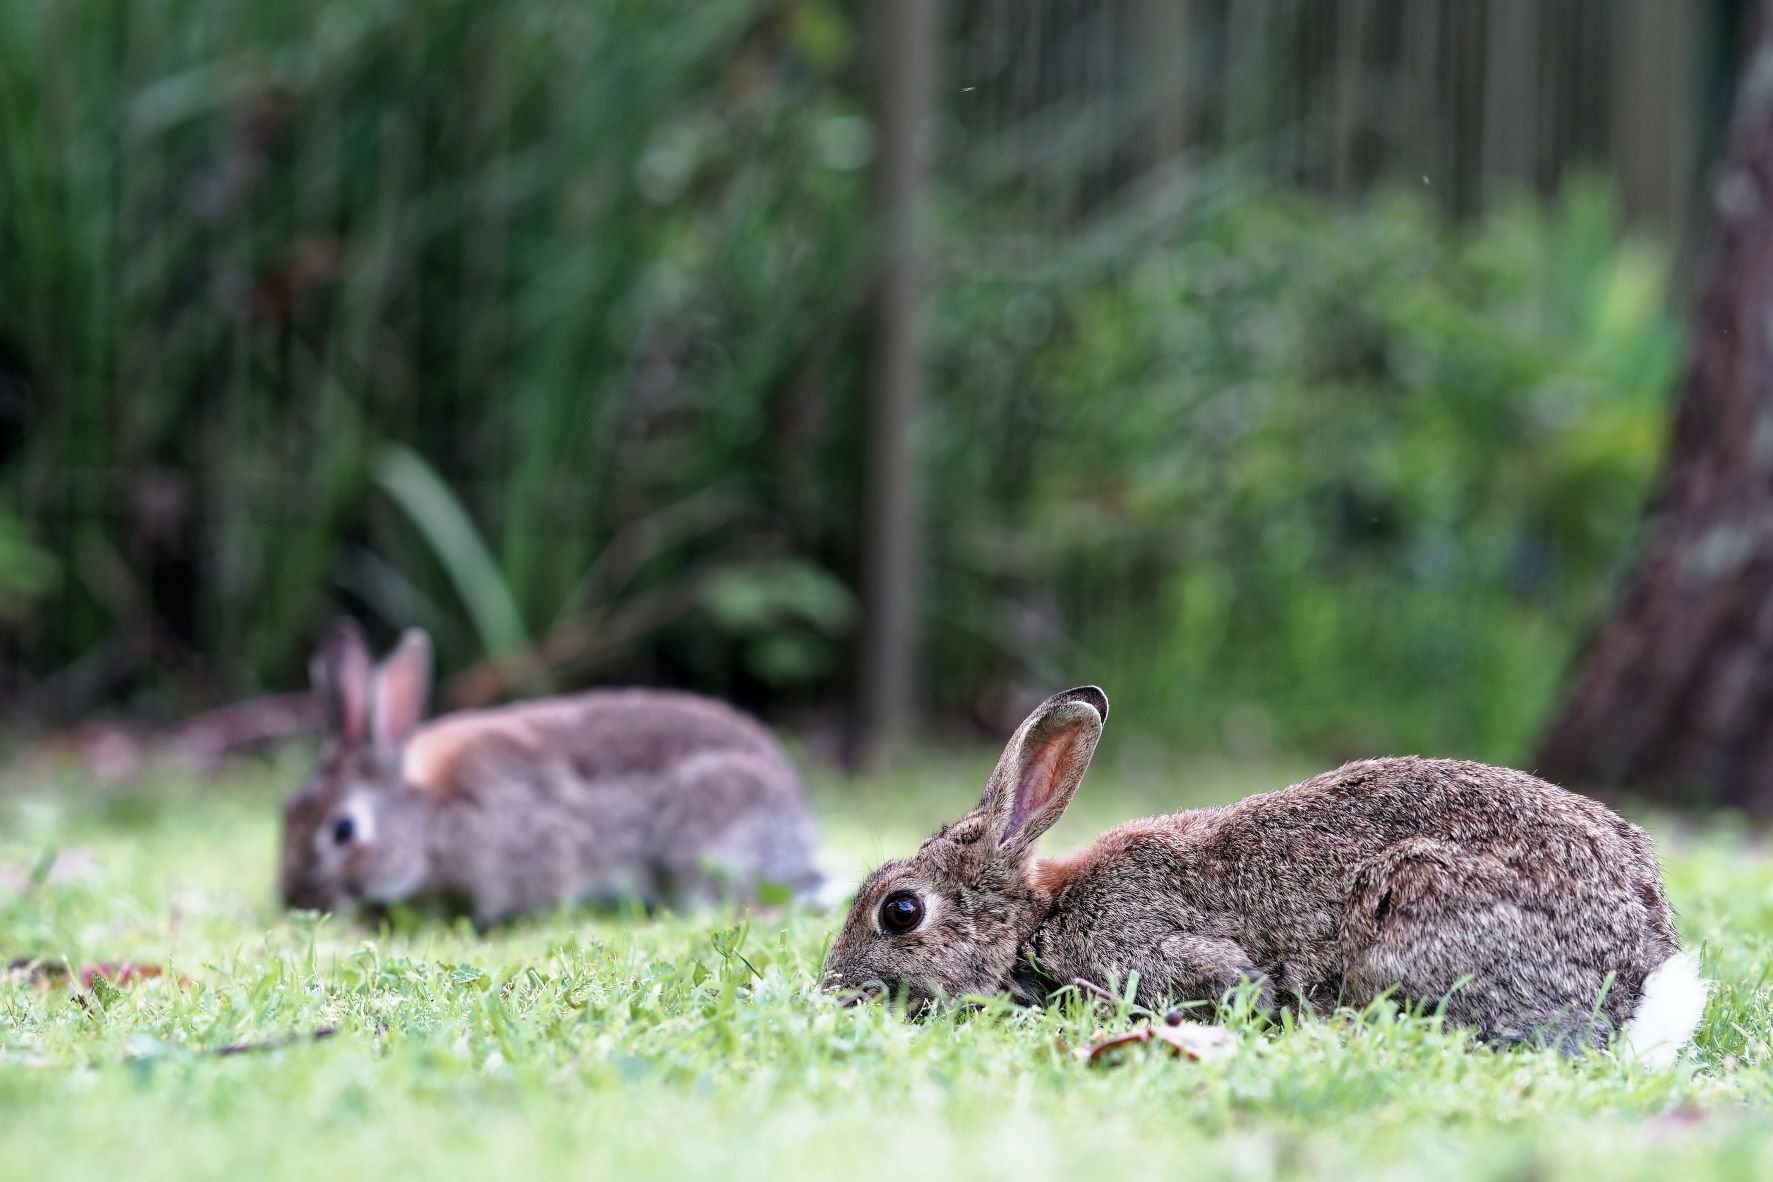 Els conills, una plaga agrícola controlable per fumigació